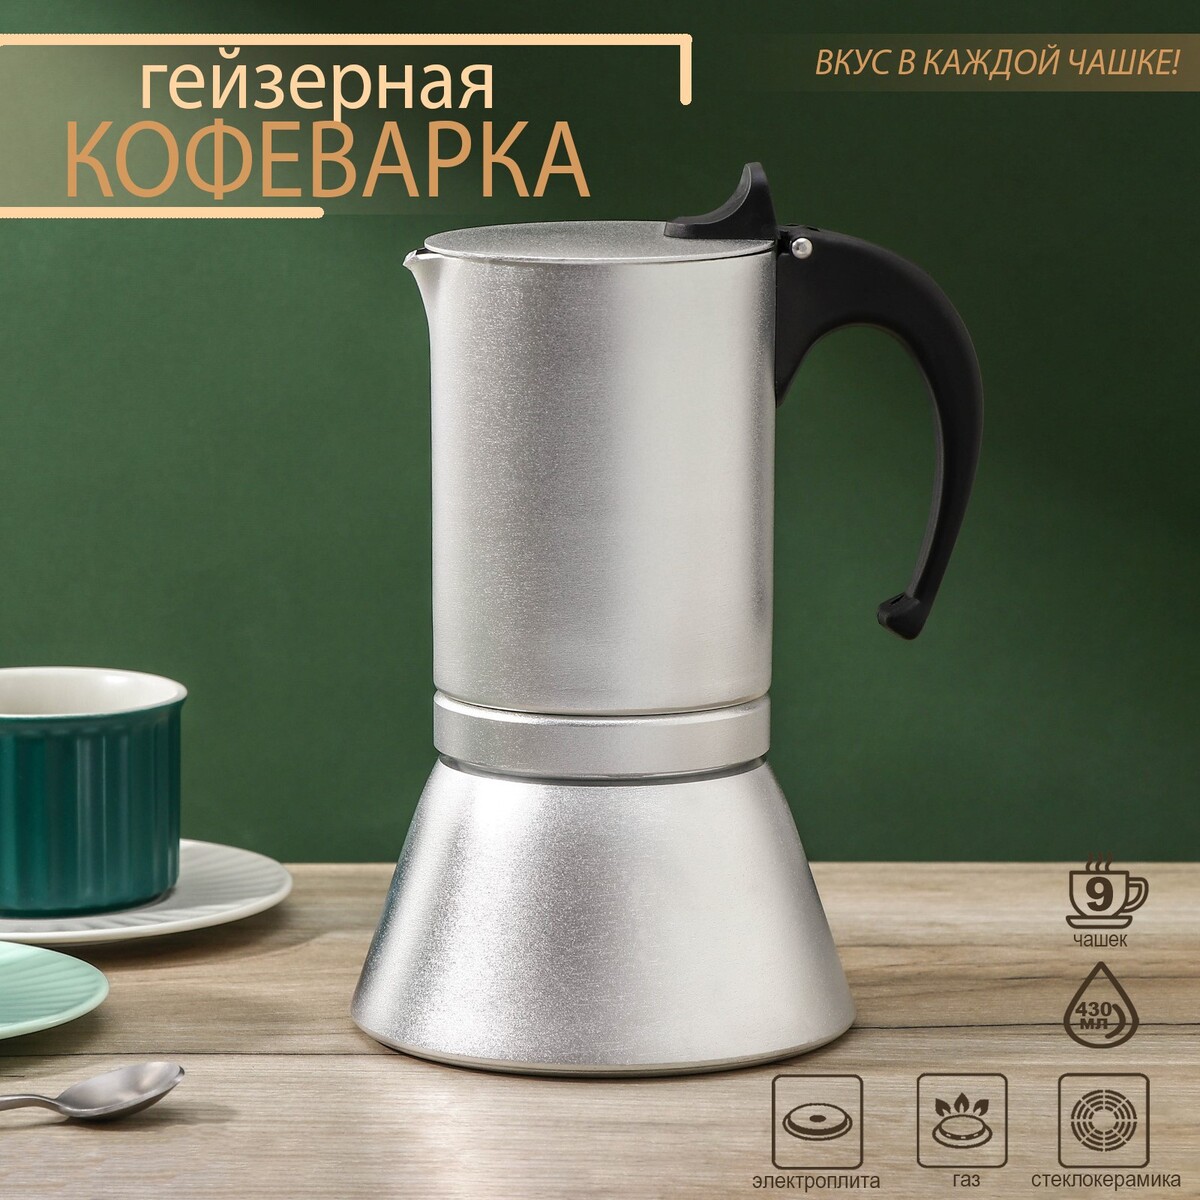 Кофеварка гейзерная magistro salem, на 9 чашек, 430 мл, индукция кофеварка гейзерная bialetti moka express 9 порций 1165